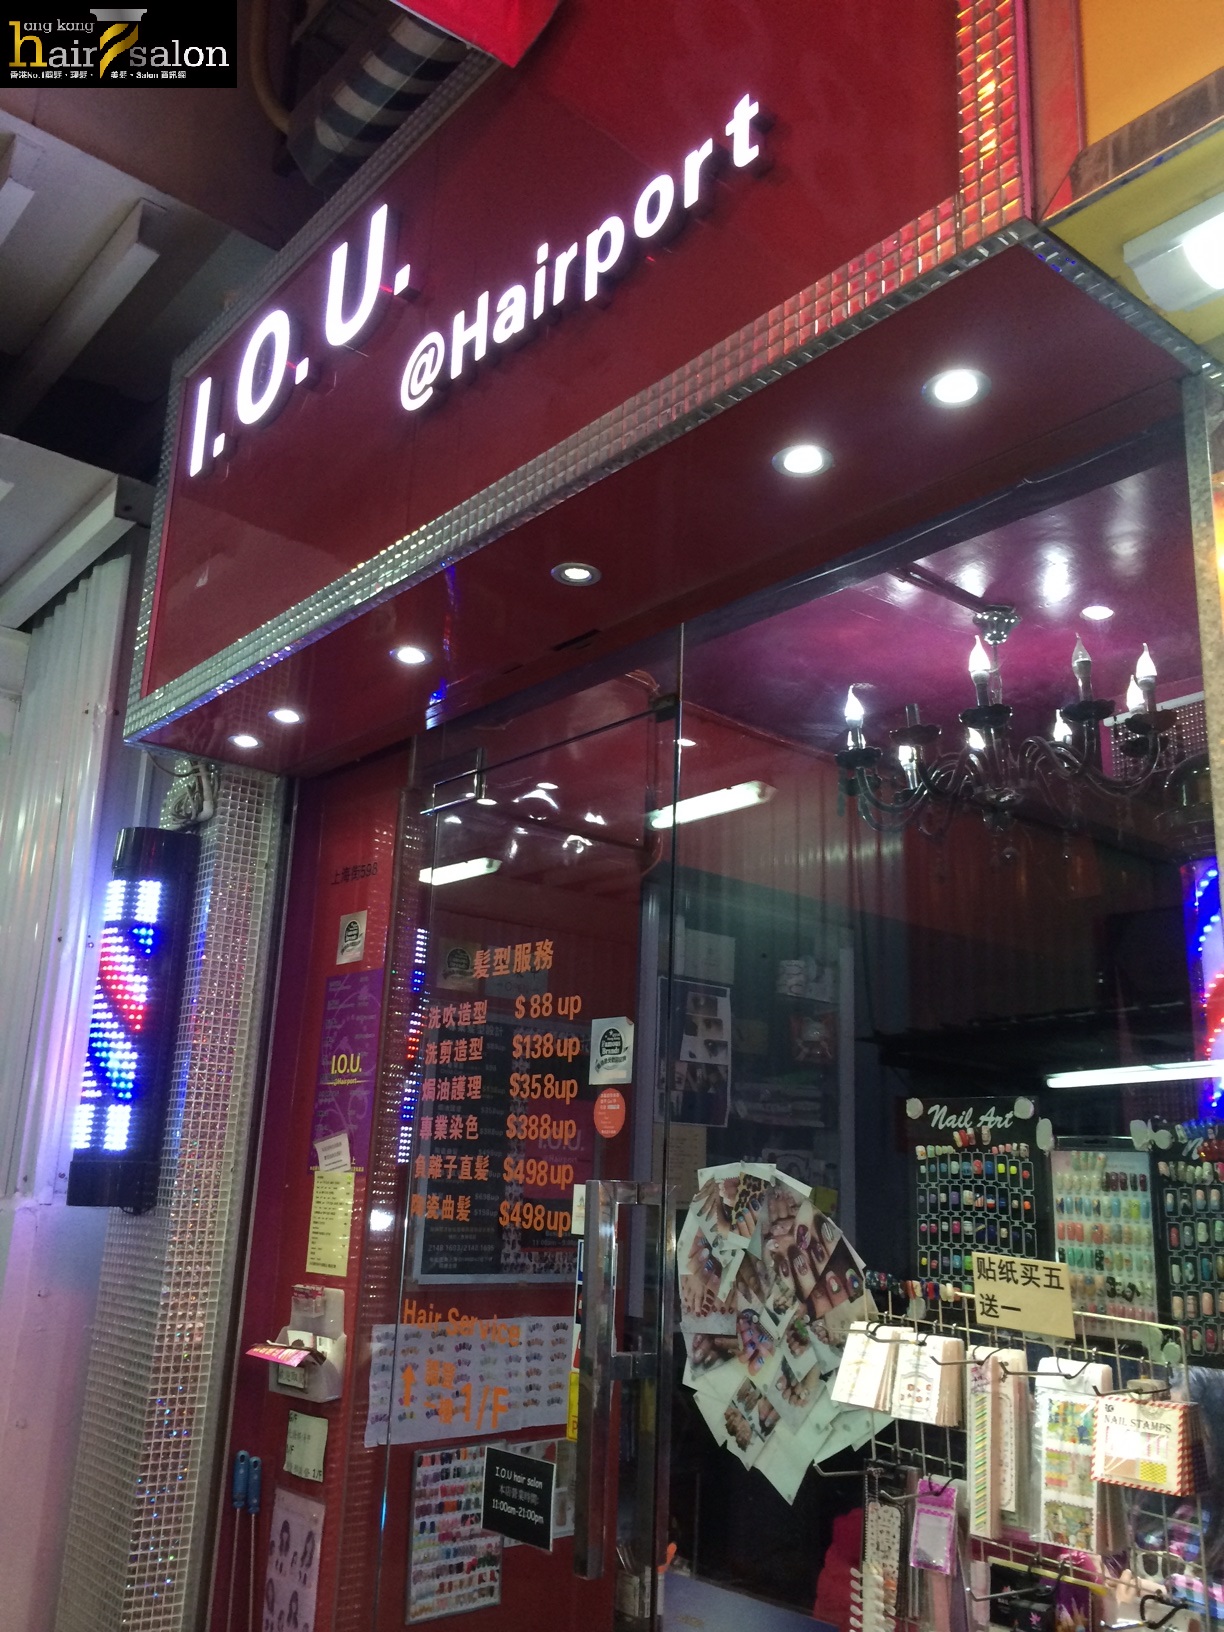 髮型屋: IOU Hair Salon (上海街)